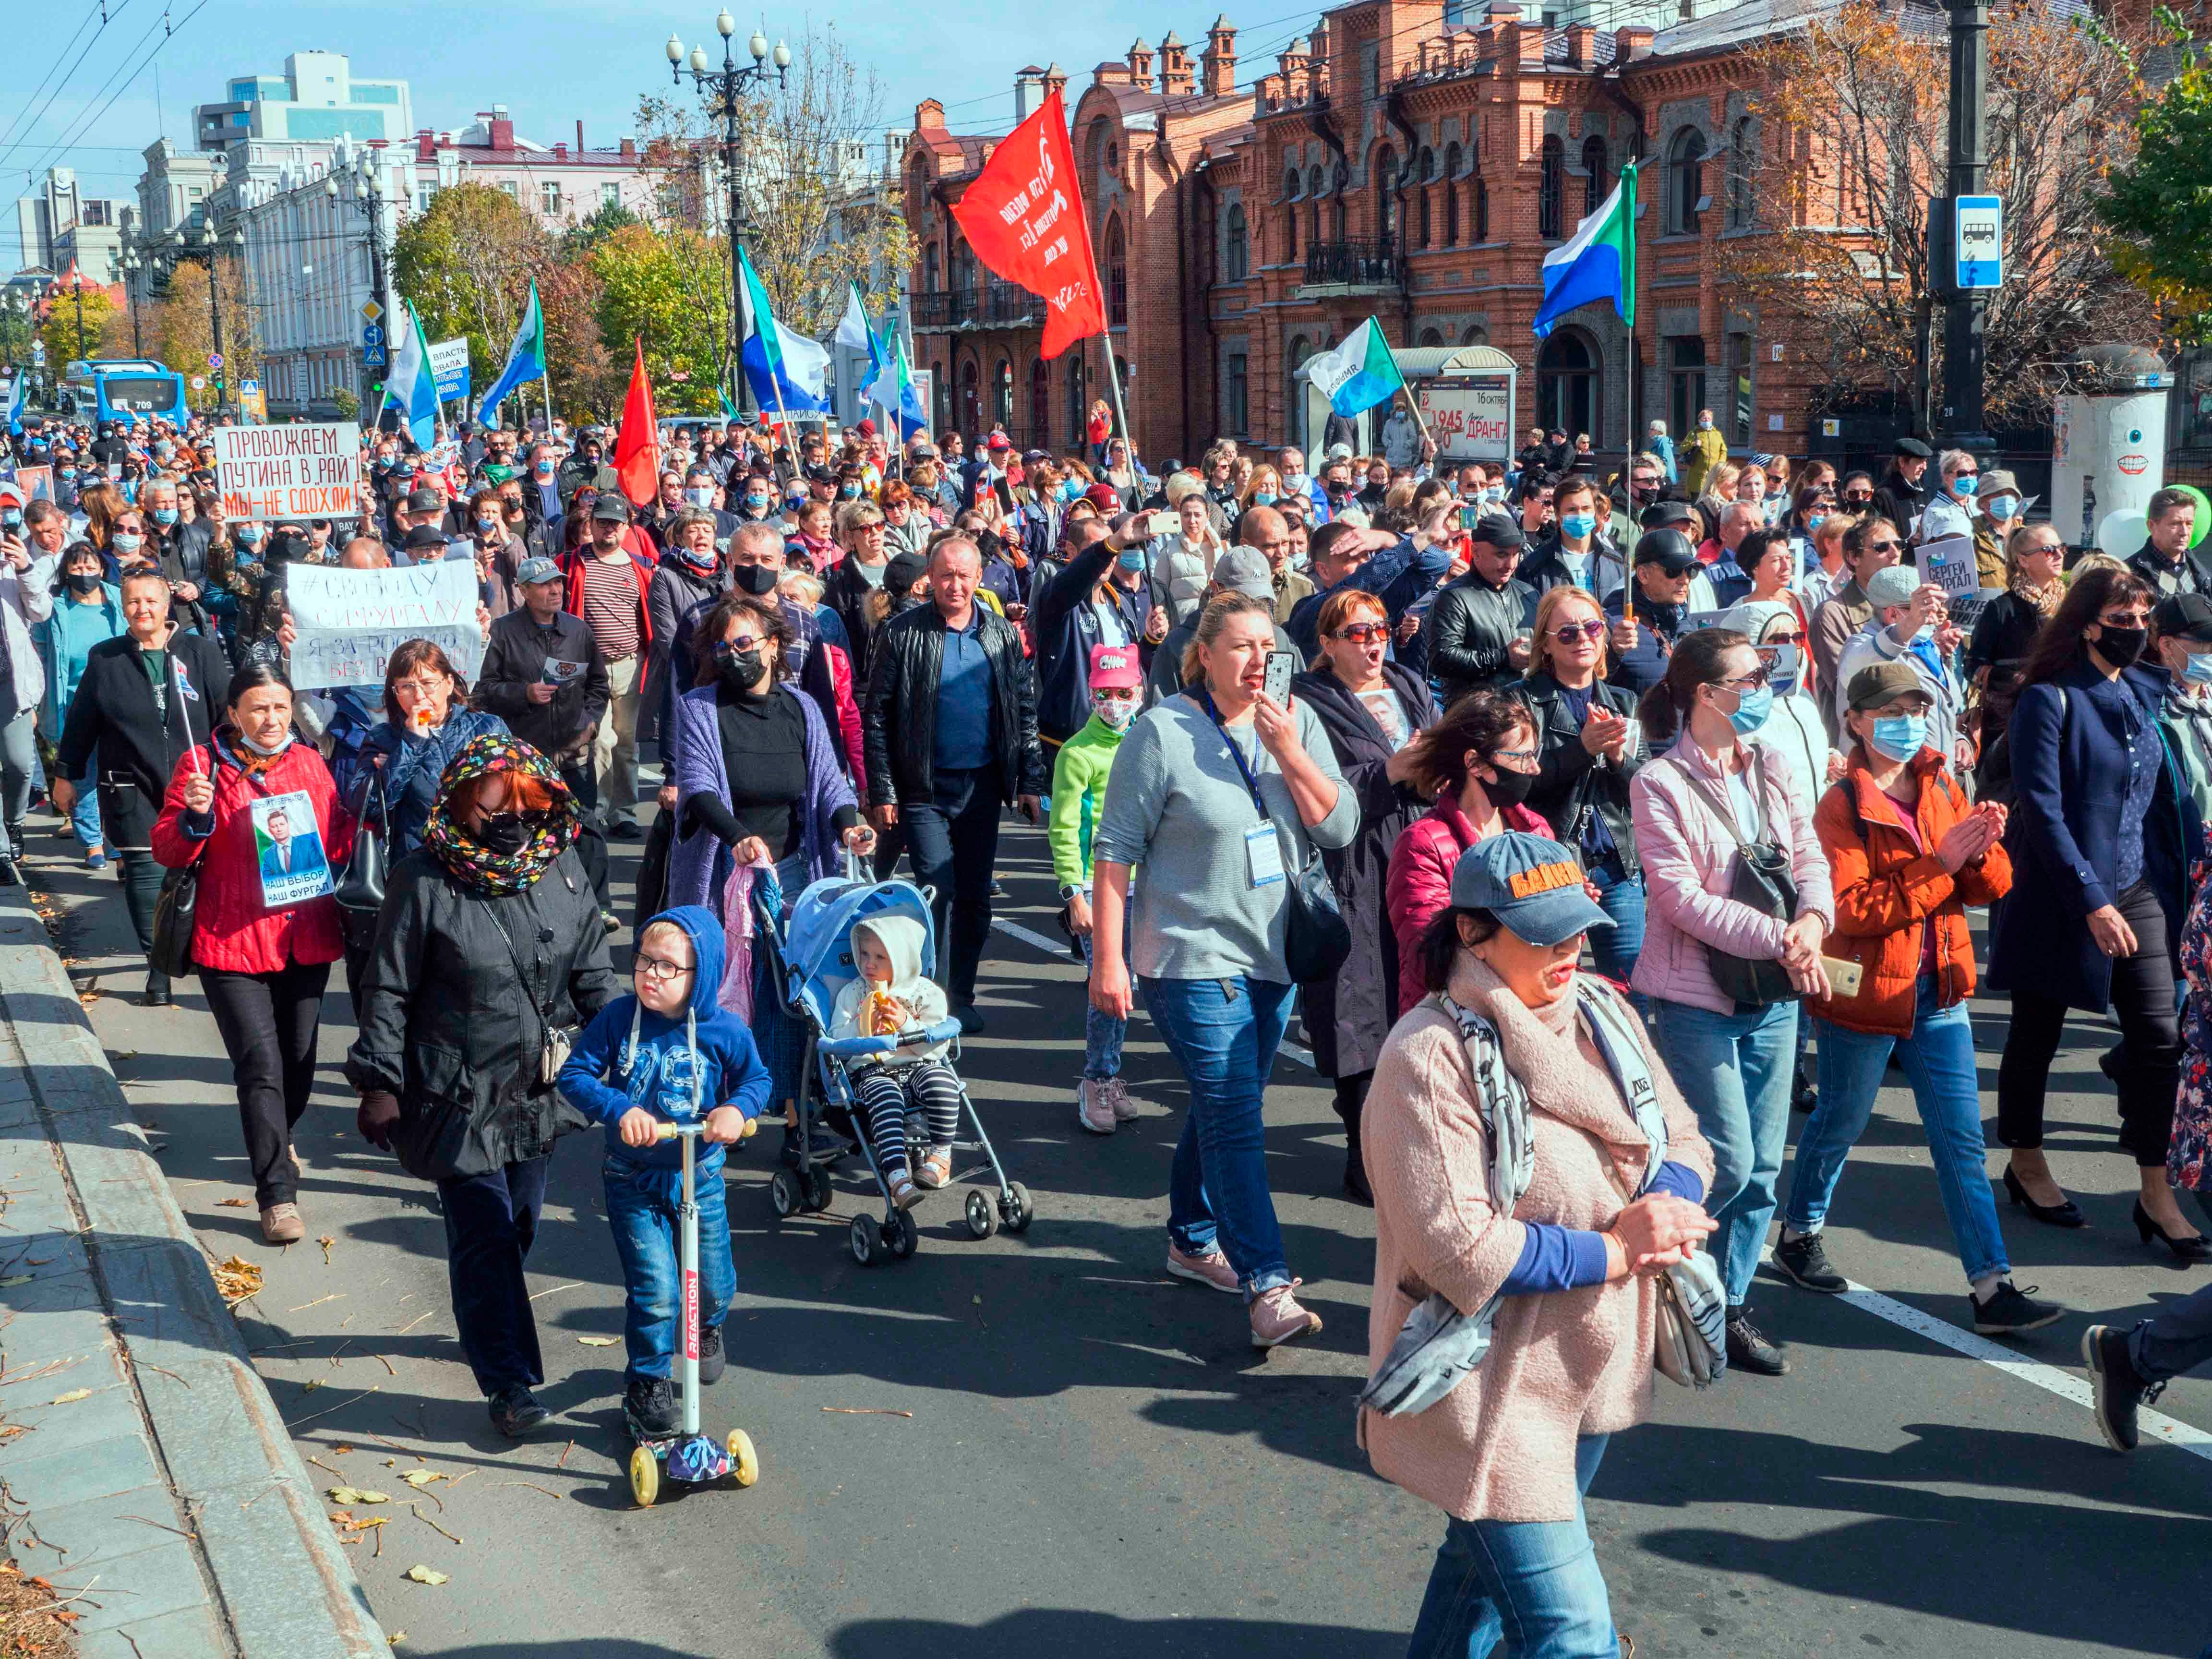 Протестующие в поддержку бывшего губернатора области Сергея Фургала, Хабаровск, 10 октября 2020 года. Полиция задержала несколько десятков участников впервые с начала акций протеста три месяца назад.